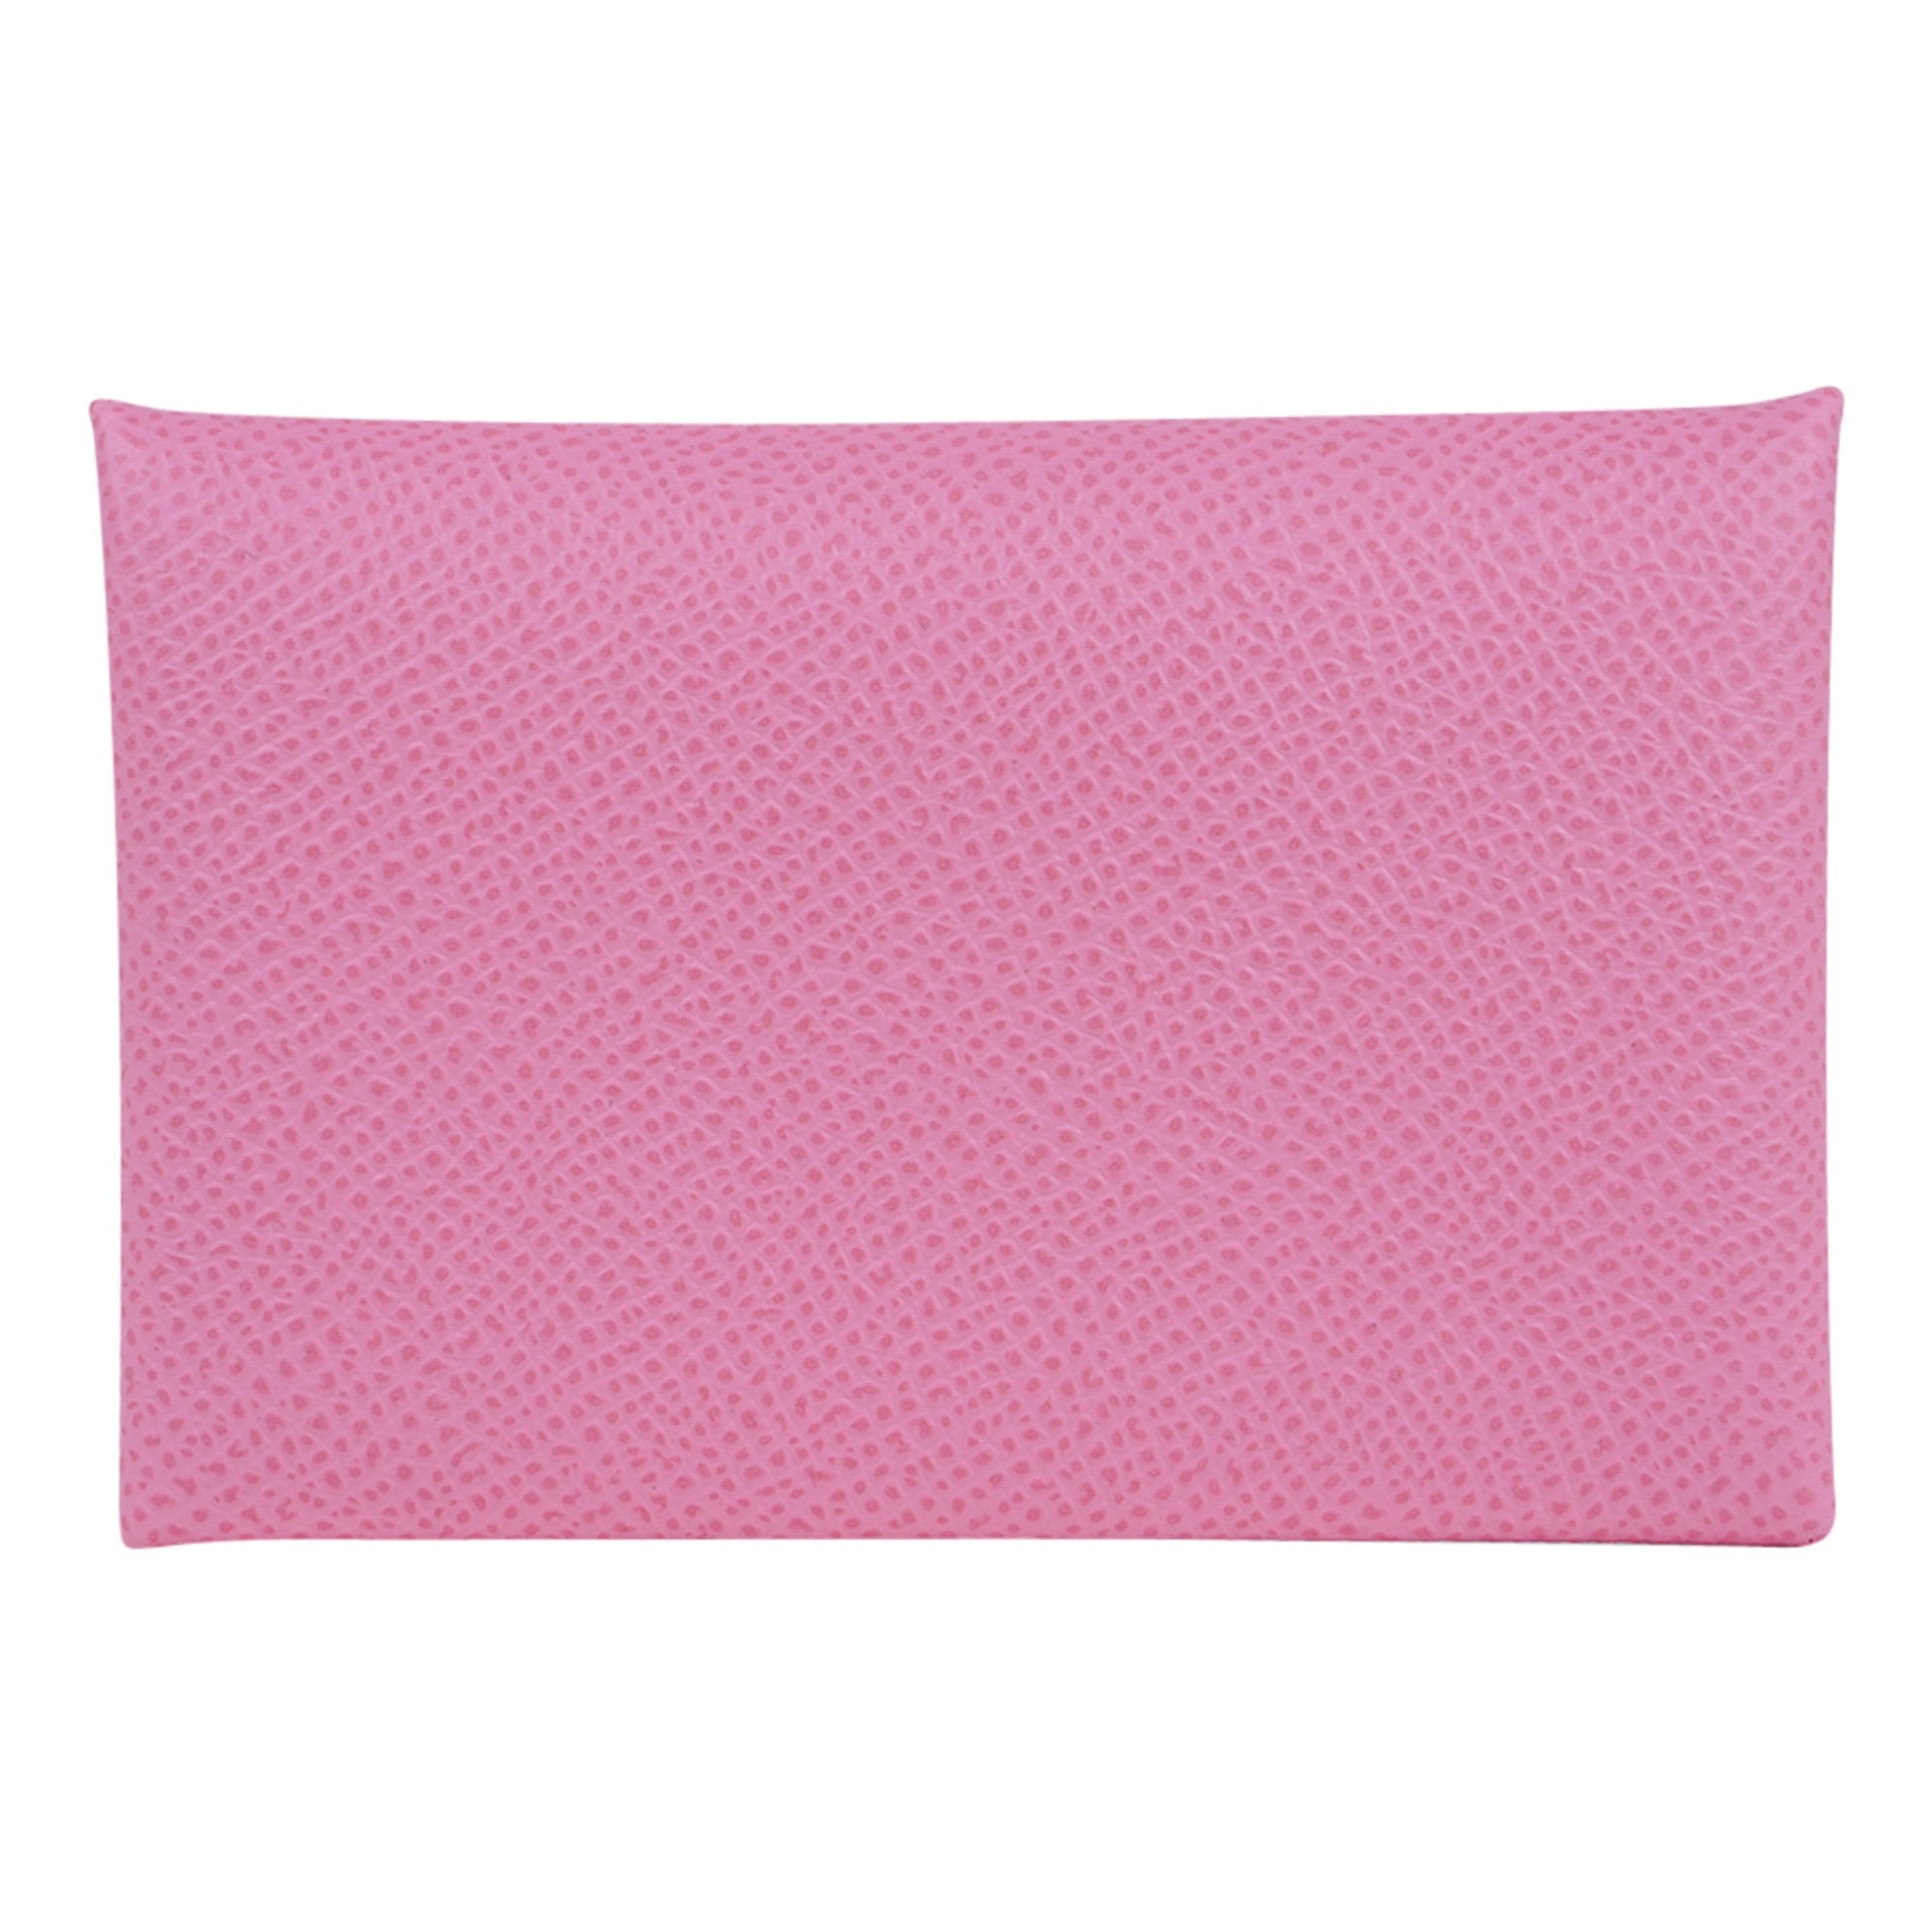 Hermes Calvi Card Holder 5P Pink Epsom Leather New w/Box